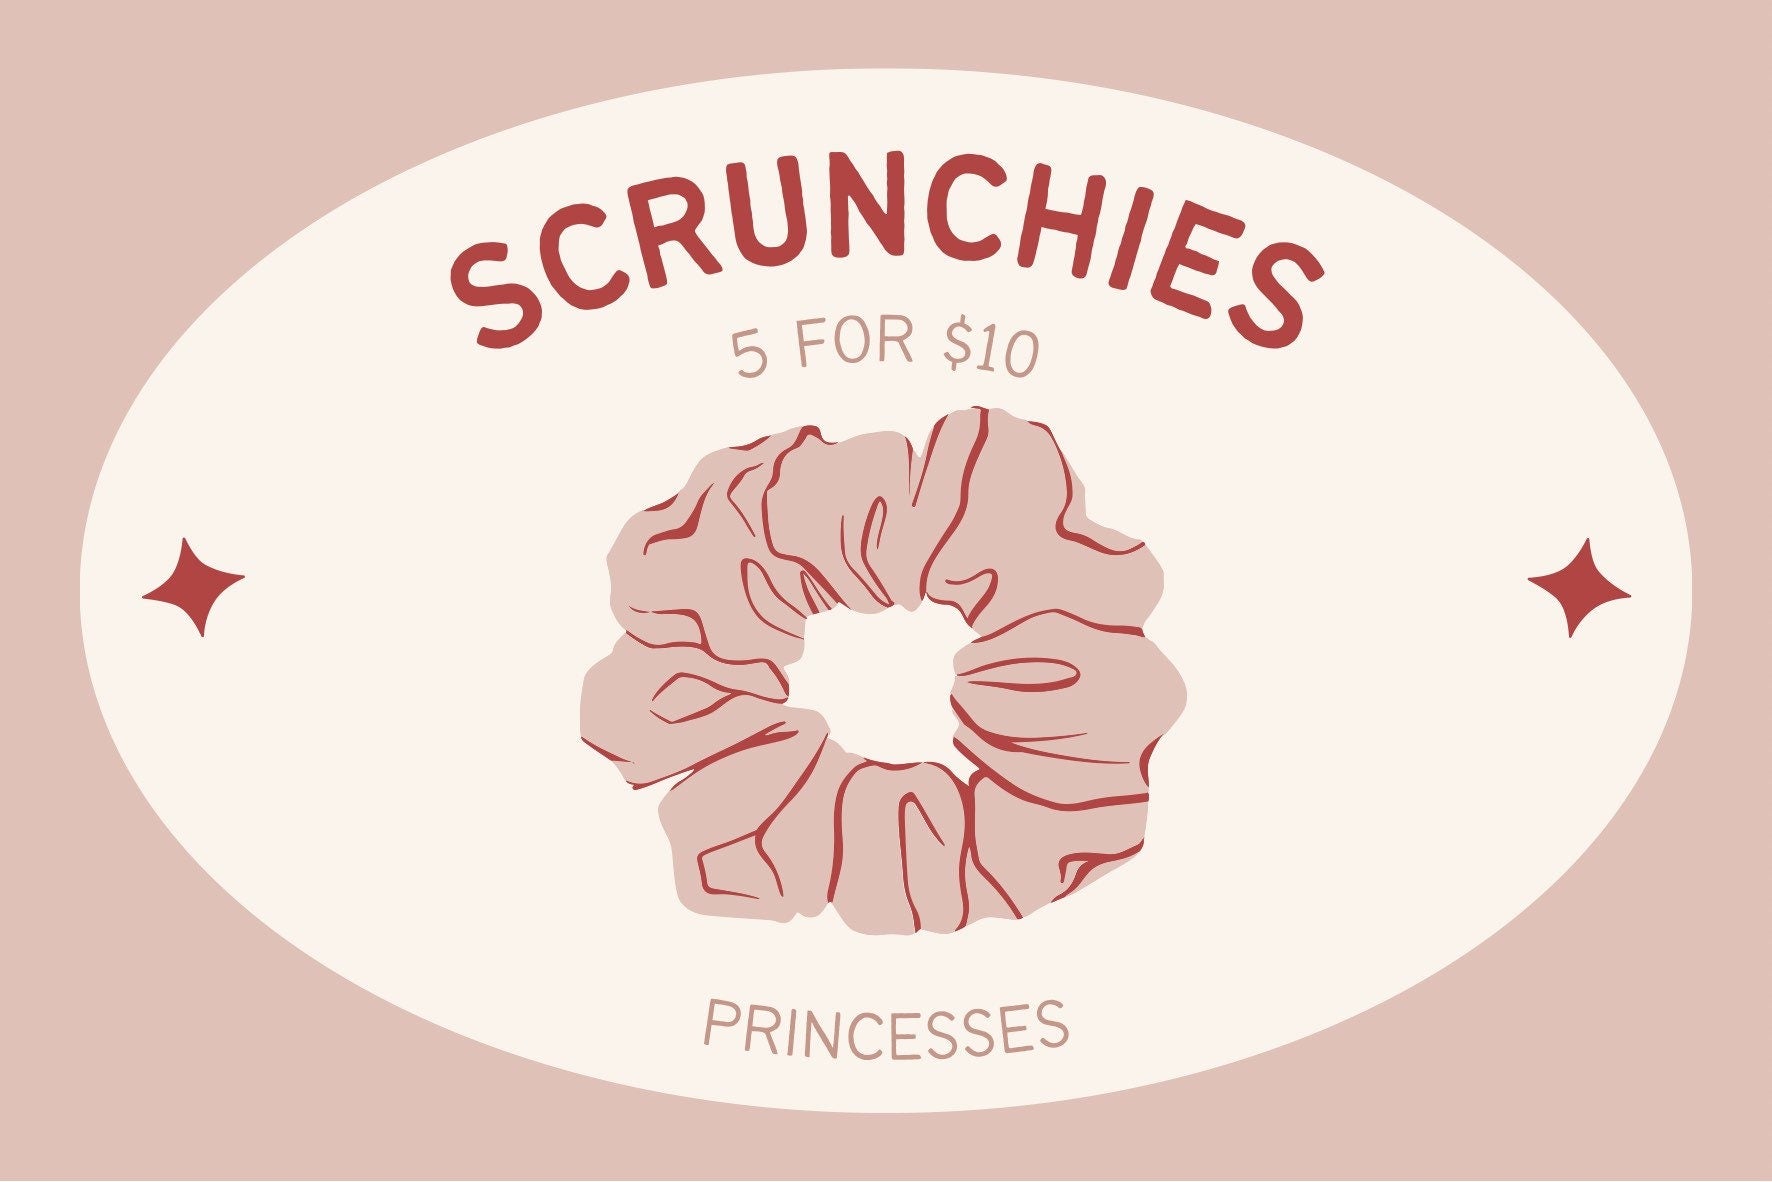 Scrunchies - Surprise - Princesses - Hair Accessories - Fun Hair Piece - Princess Hair - Hair Tie - Long Hair - Princess - Fairy Tale